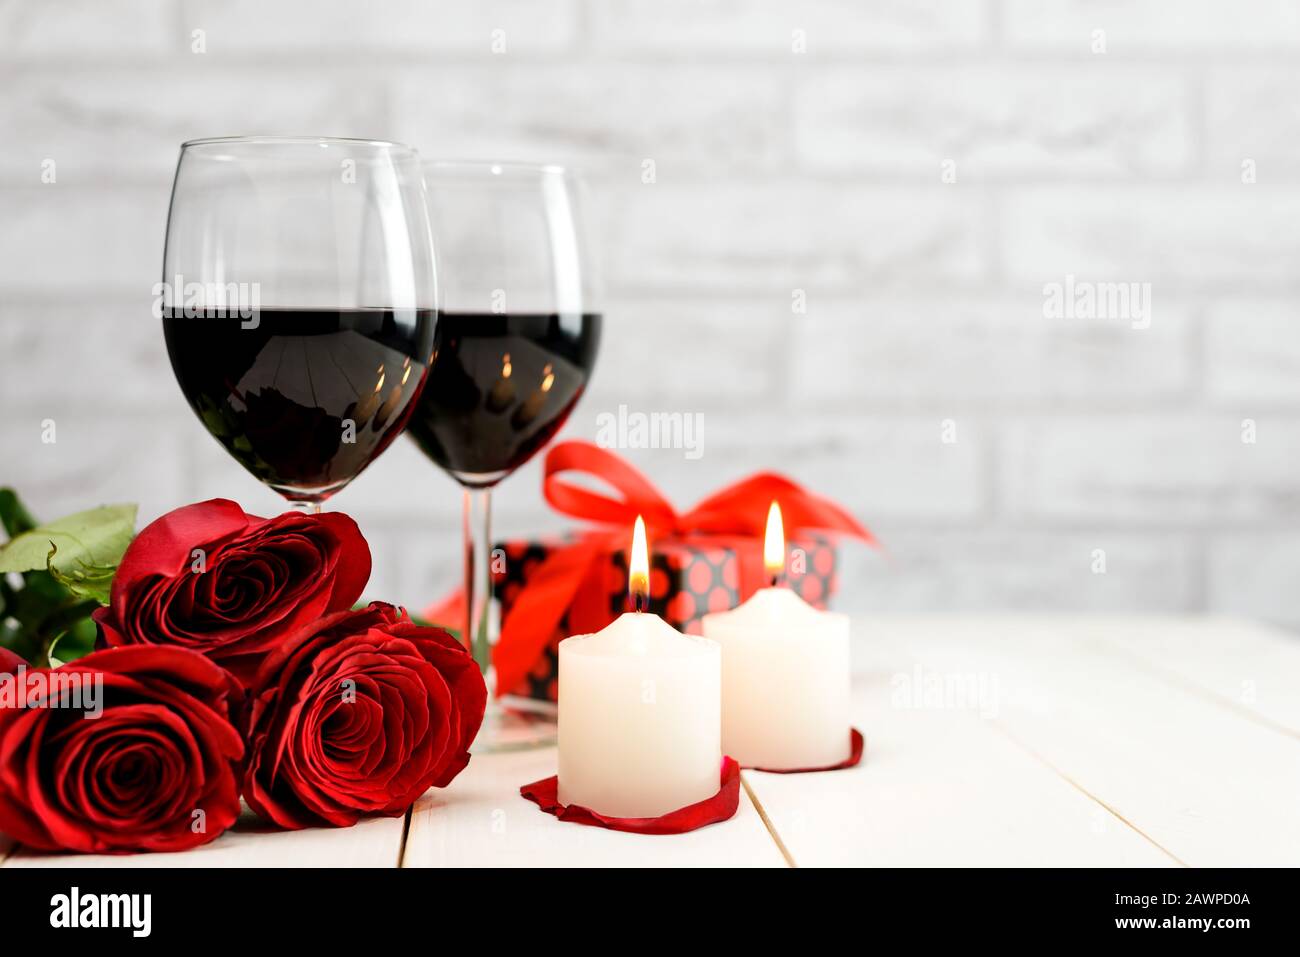 Concetto di San Valentino. Due bicchieri di vino, rose rosse, scatola regalo e candele brucianti su un tavolo di legno bianco con spazio copia per il testo. Focu selettivo Foto Stock